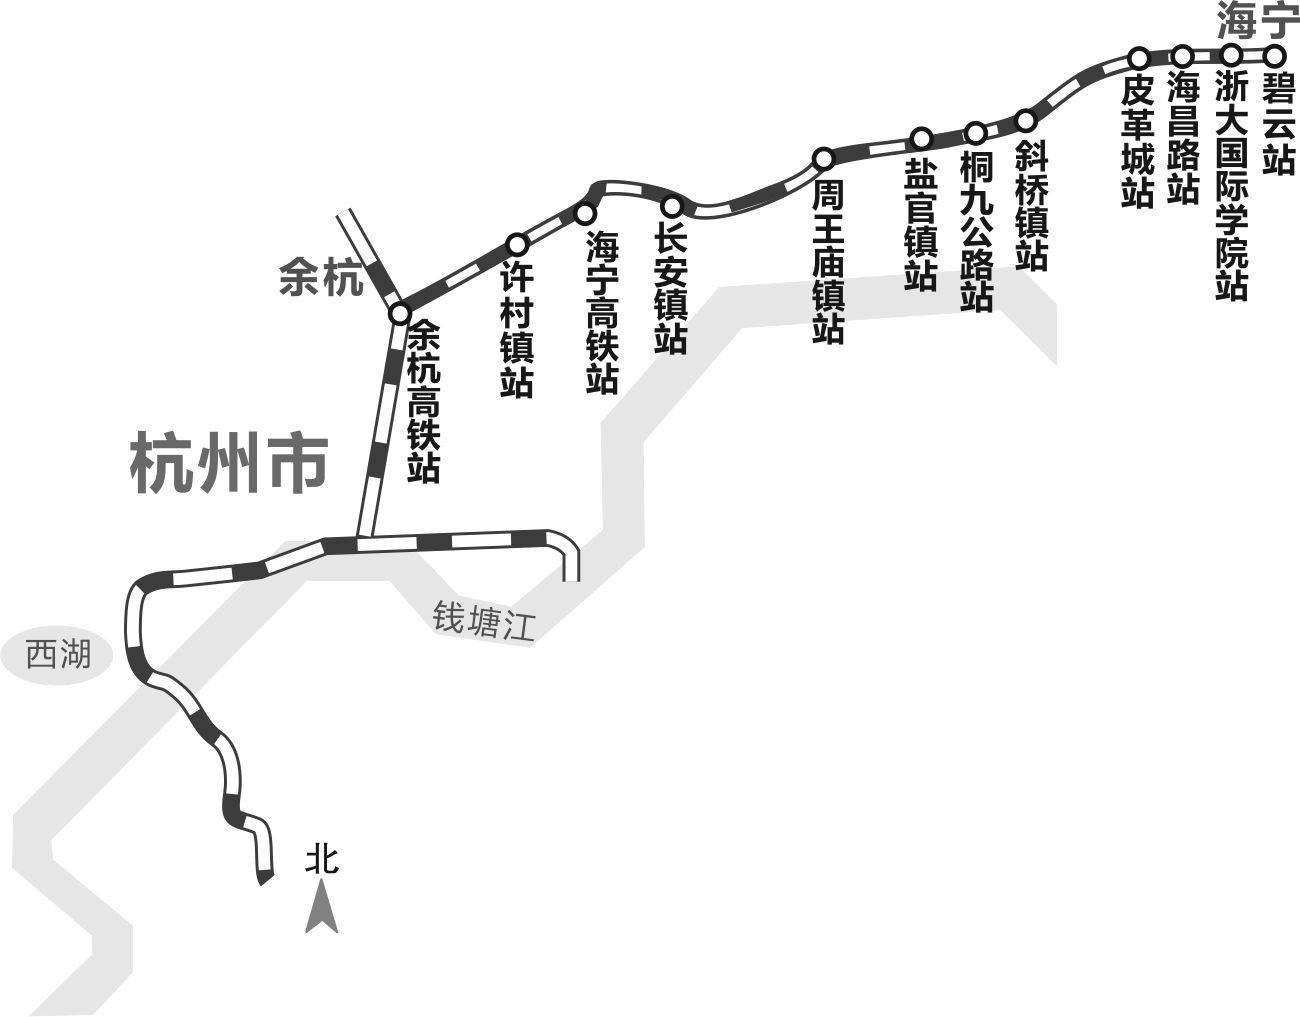 乘坐电梯上二楼,经过走廊,进入下一个换票环节: 杭海城际铁路起于杭州